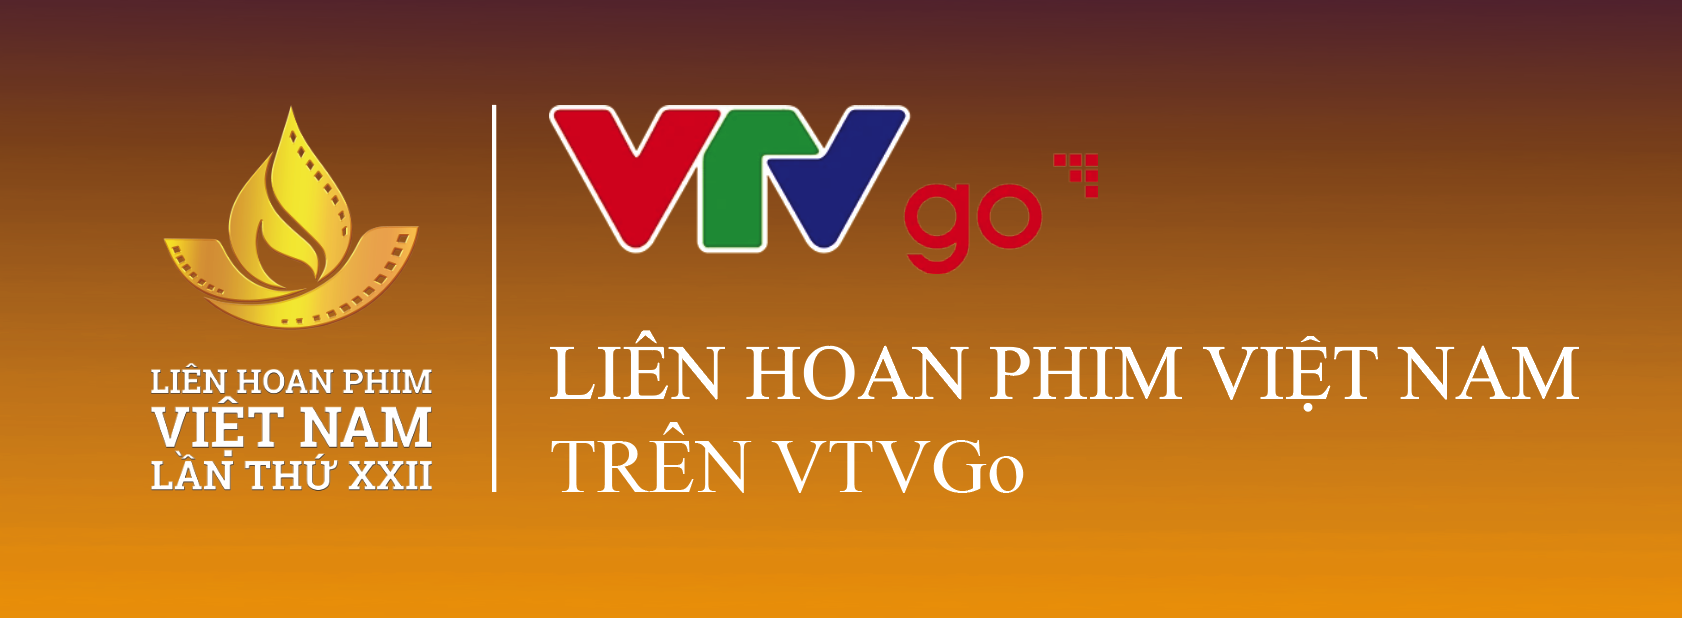 Thưởng thức những phim đặc sắc trong chương trình Liên hoan phim Việt Nam lần thứ XXII trên VTVGo - Ảnh 1.